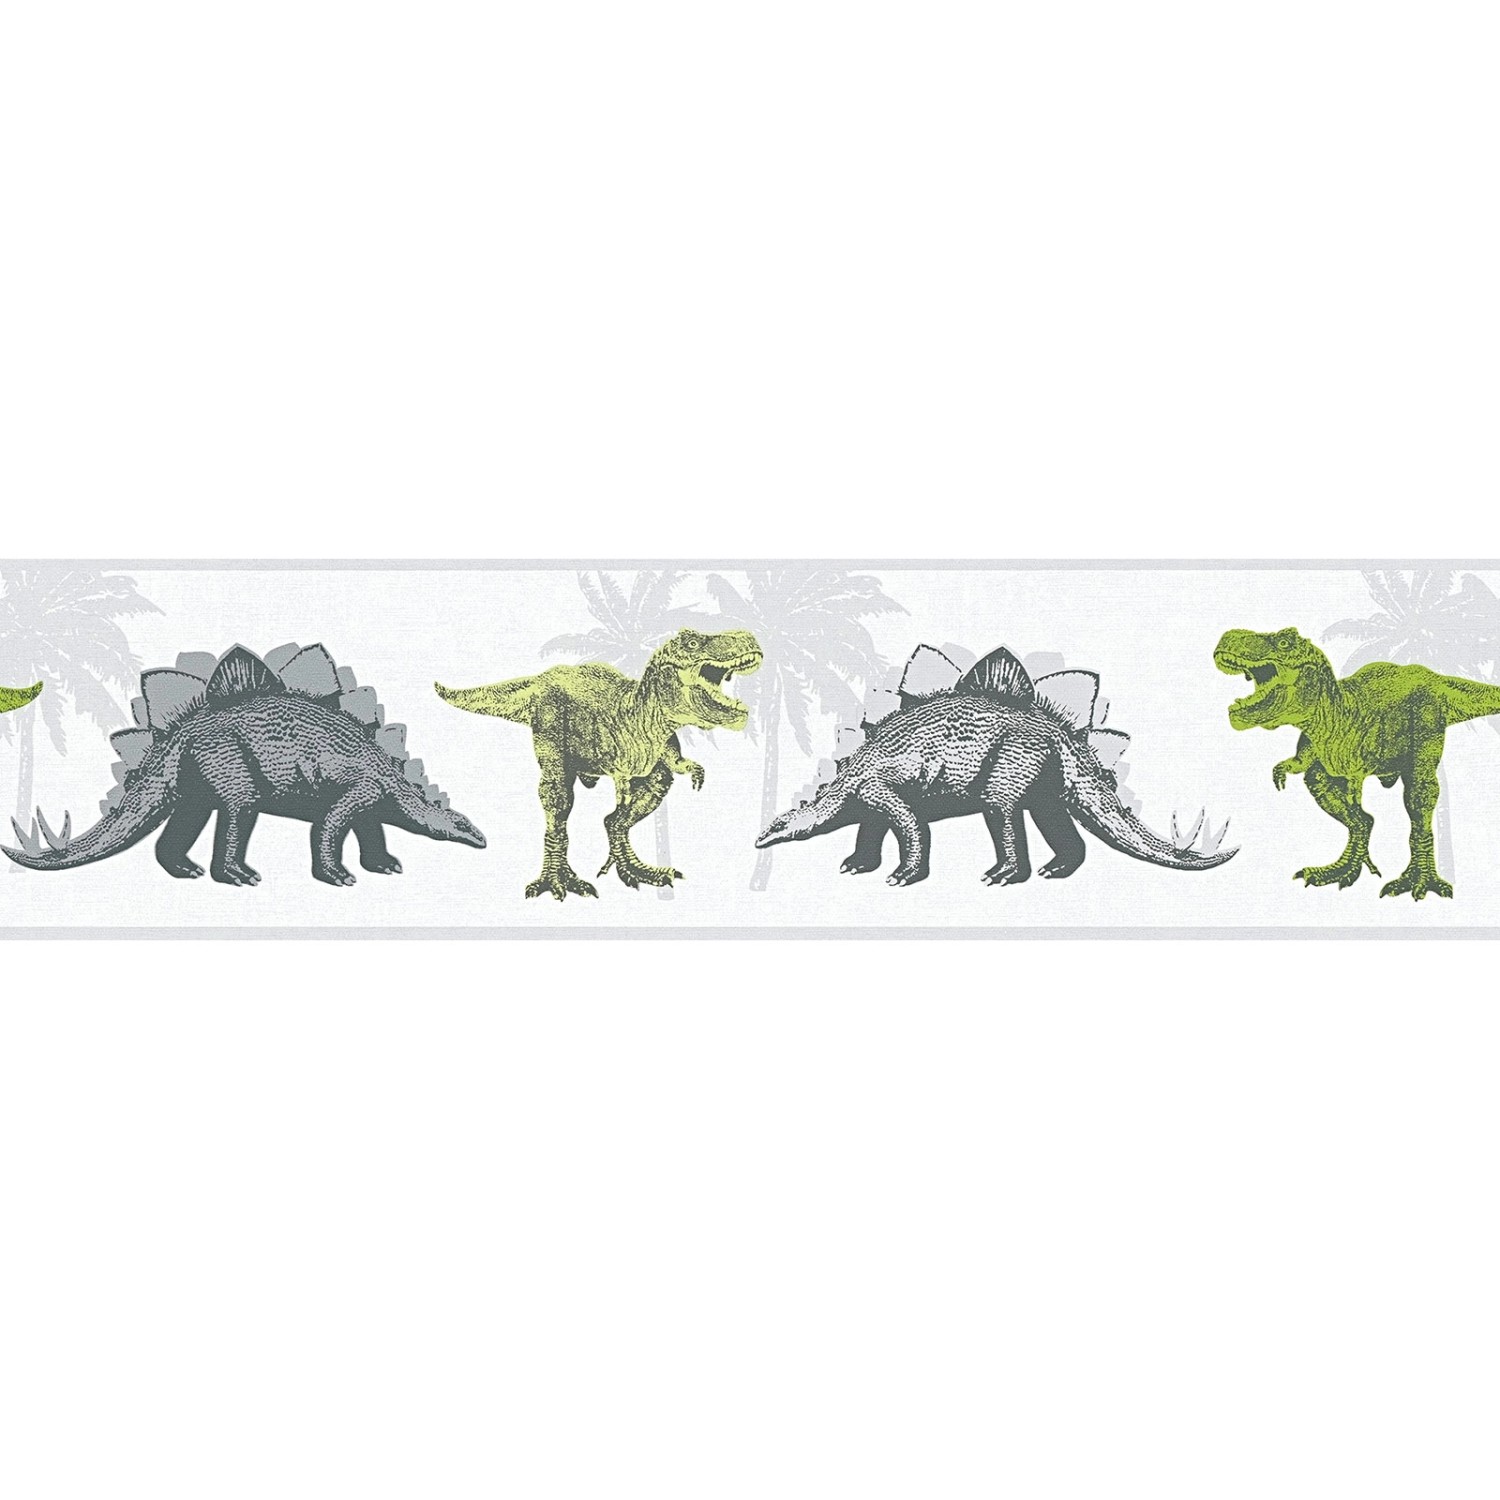 Bricoflor Dino Tapete als Bordüre Kinderzimmer Tapetenbordüre mit Dinosaurier in Grün und Grau Kinder Tapetenborte Ideal